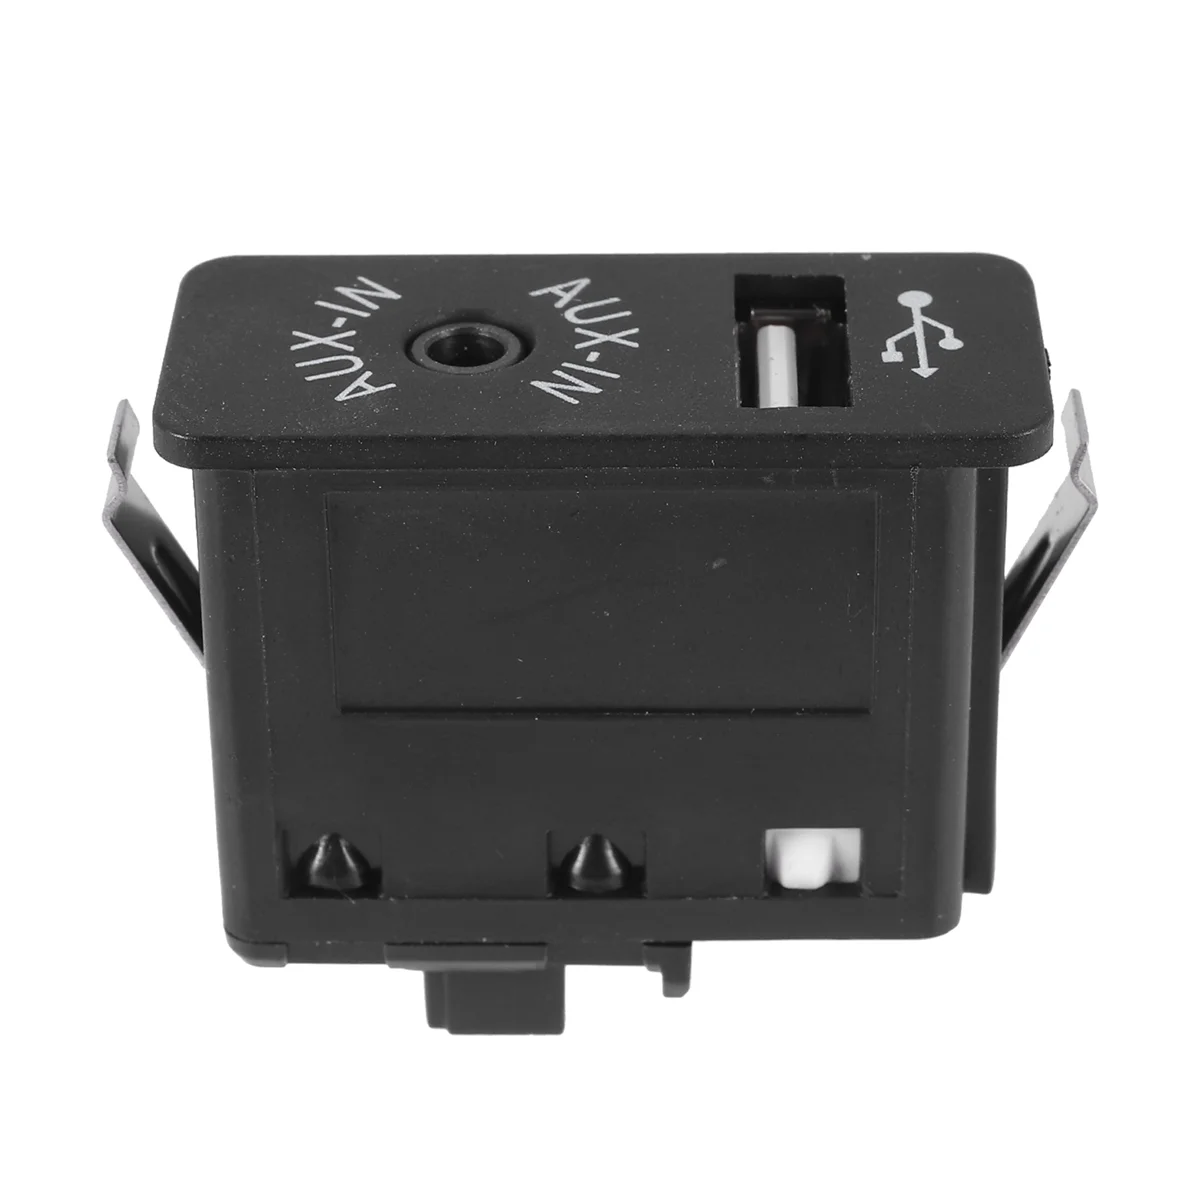 

Car USB AUX In Plug Auxiliary Input Socket Adapter for BMW E81 E87 E90 F10 F12 E70 X4 X5 X6